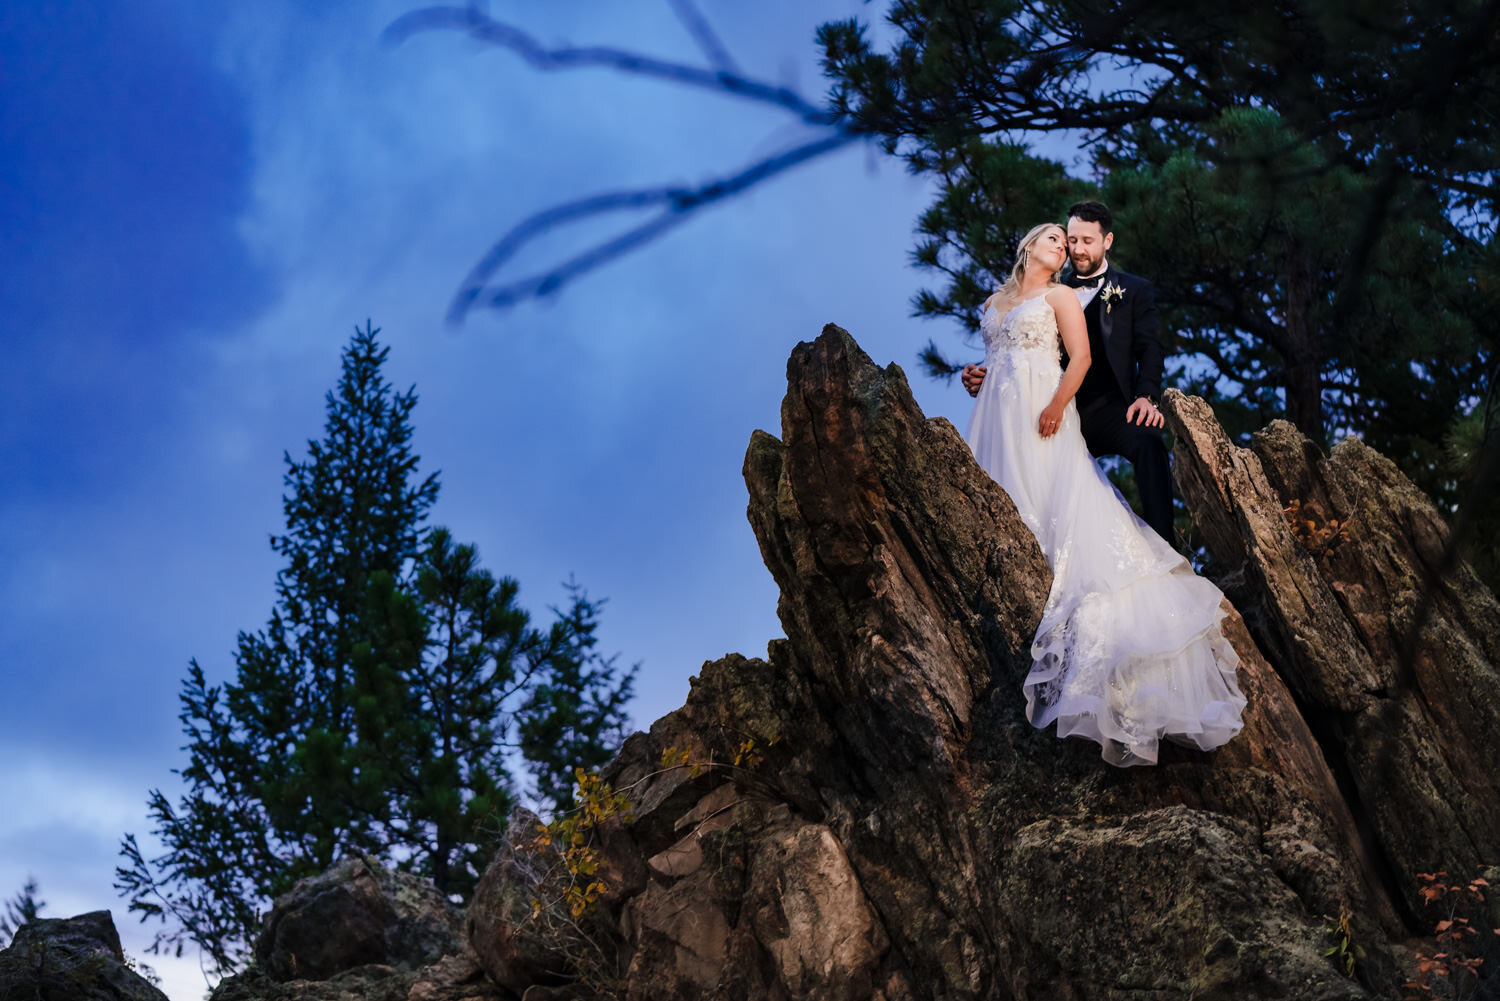  The Woodlands Colorado wedding photos by Morrison wedding photographer, JMGant Photography 